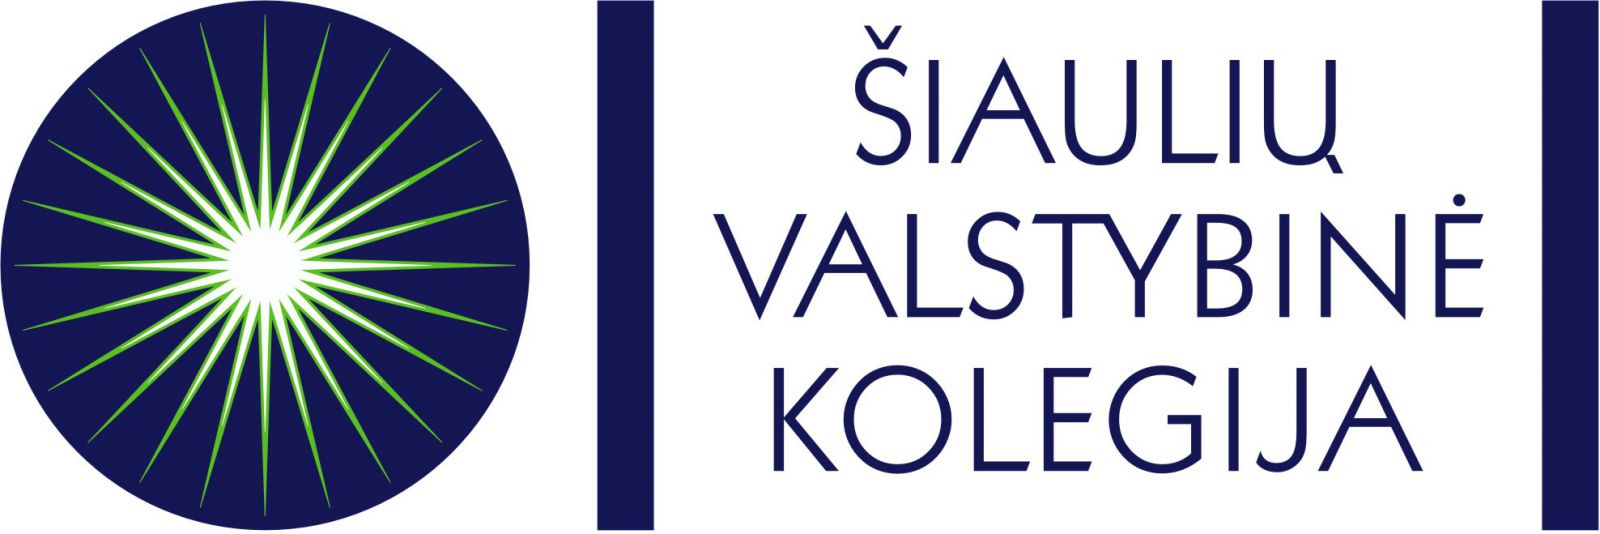 svk logo